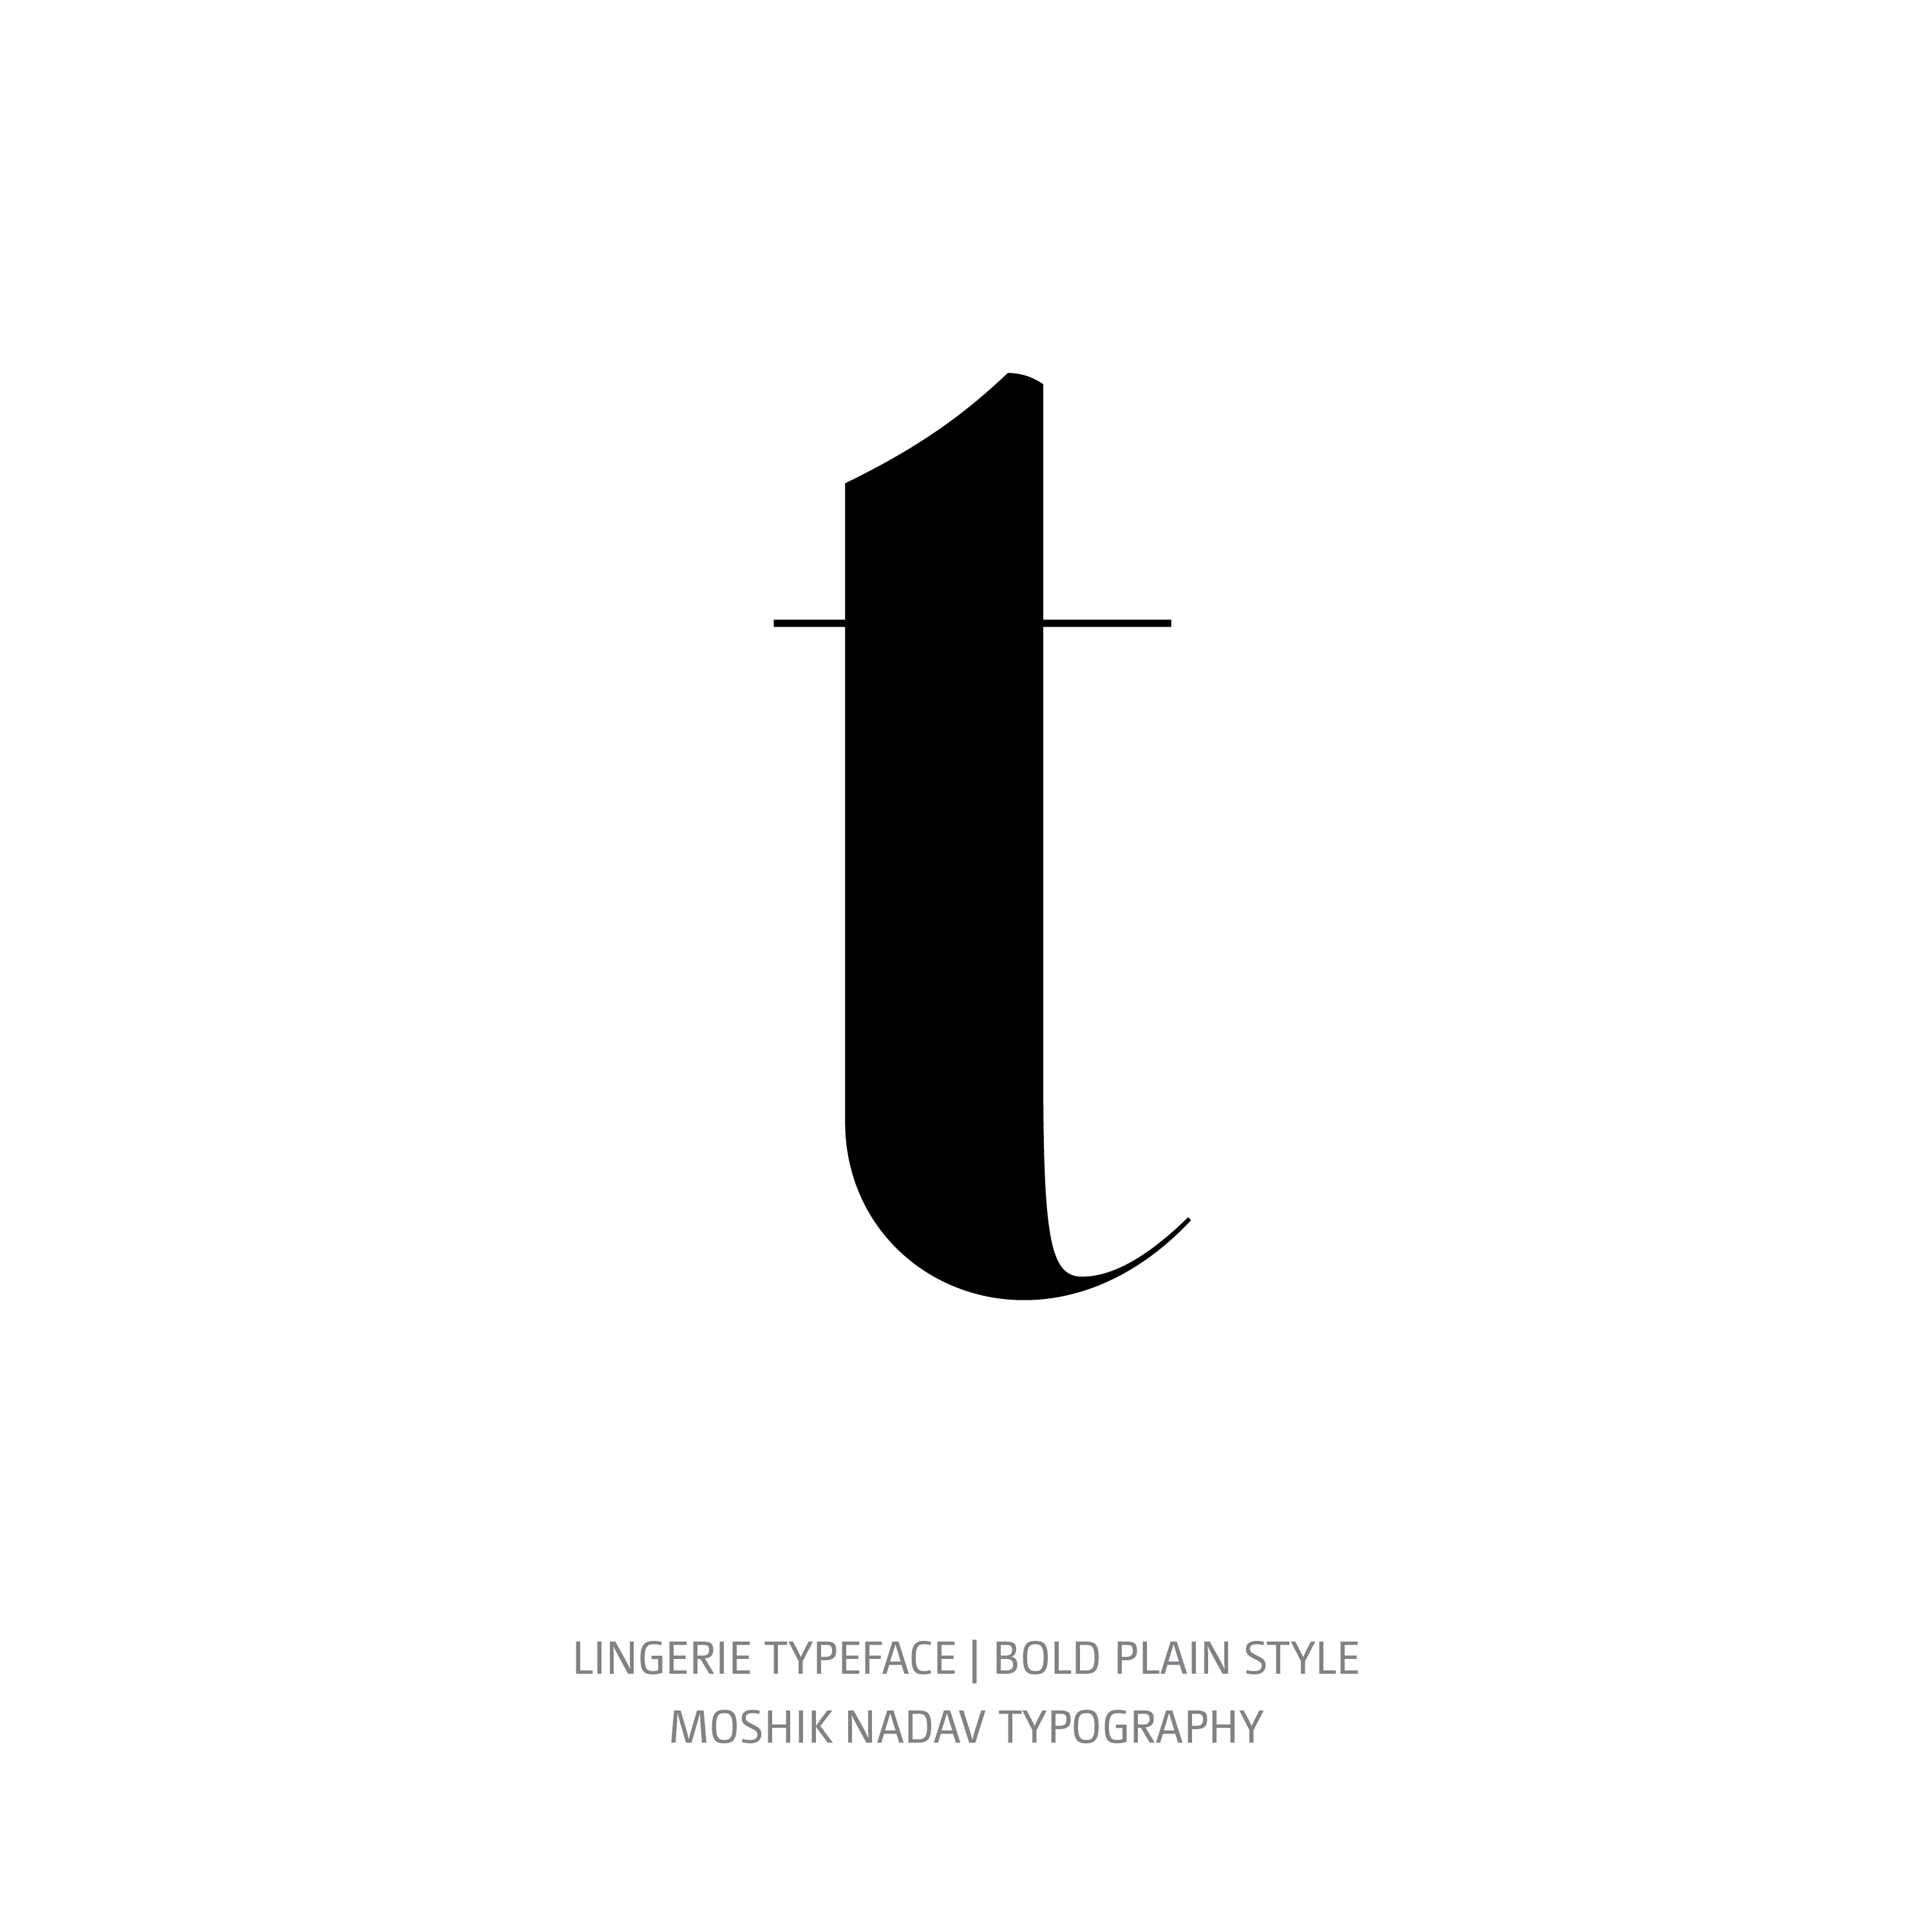 Lingerie Typeface Bold Plain t